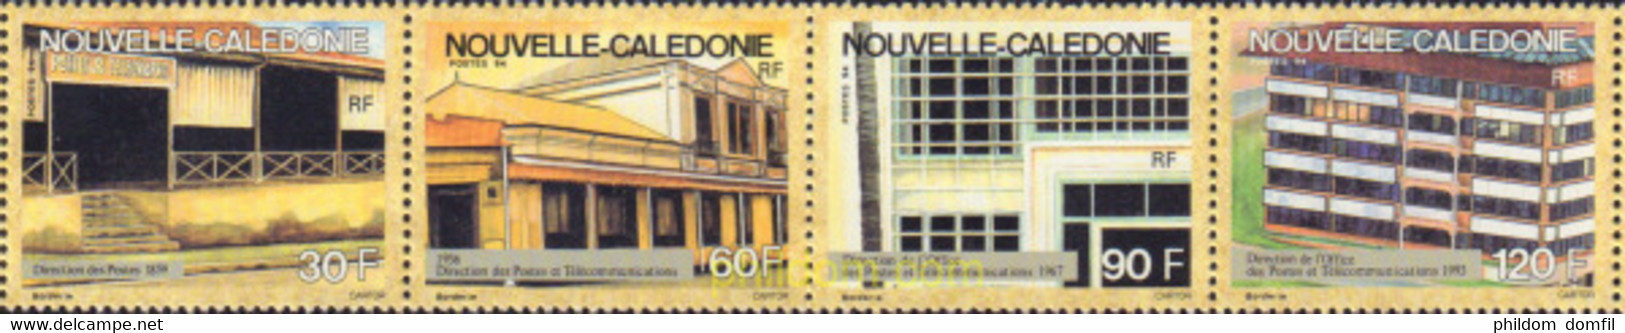 589196 MNH NUEVA CALEDONIA 1994 OFICINAS DE CORREOS - Used Stamps